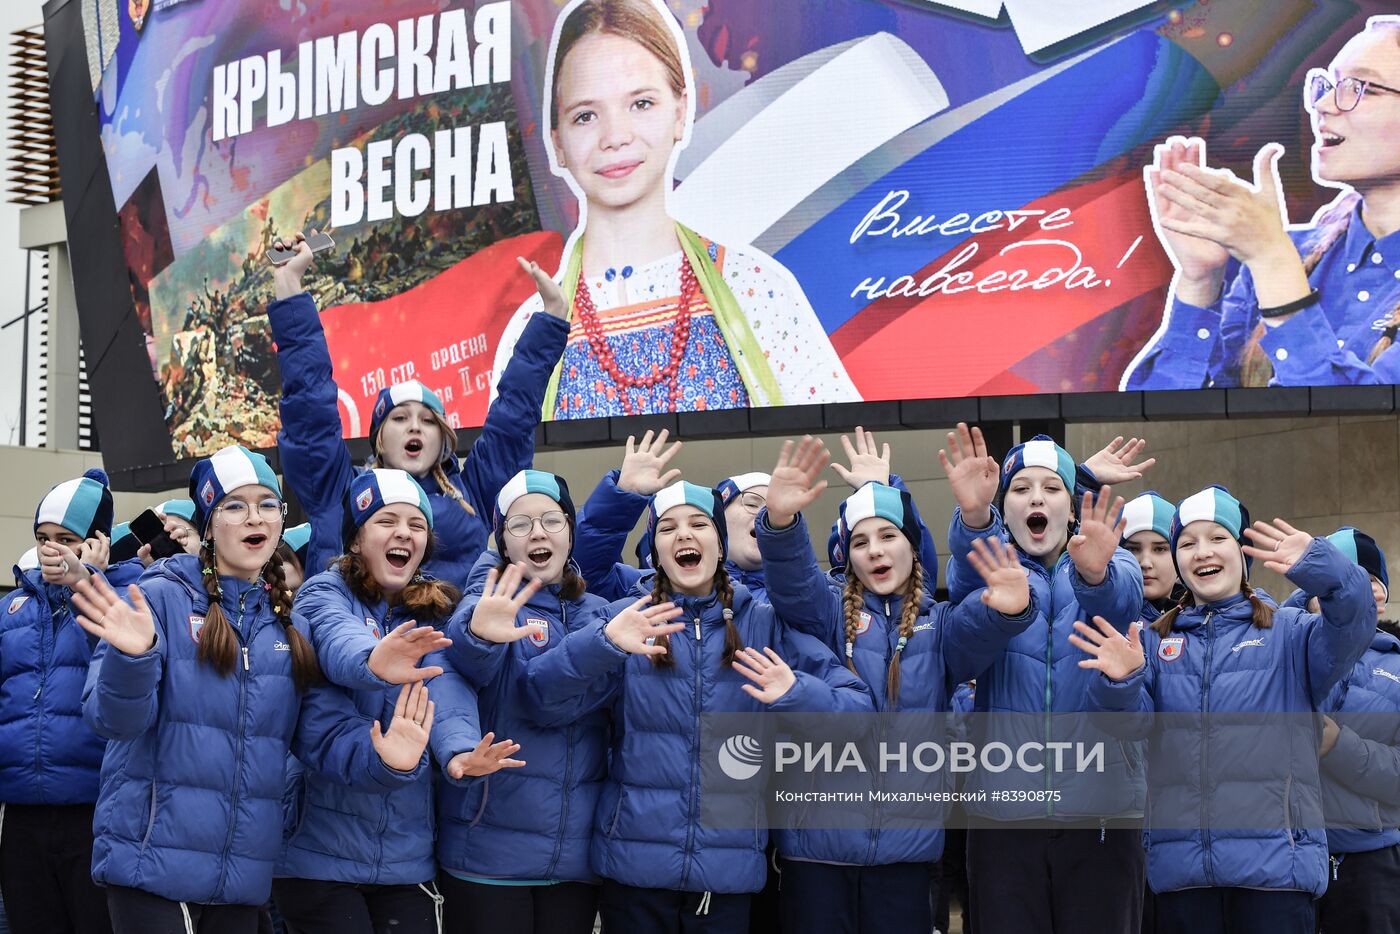 Празднование девятой годовщины воссоединения Крыма с Россией в МДЦ "Артек"